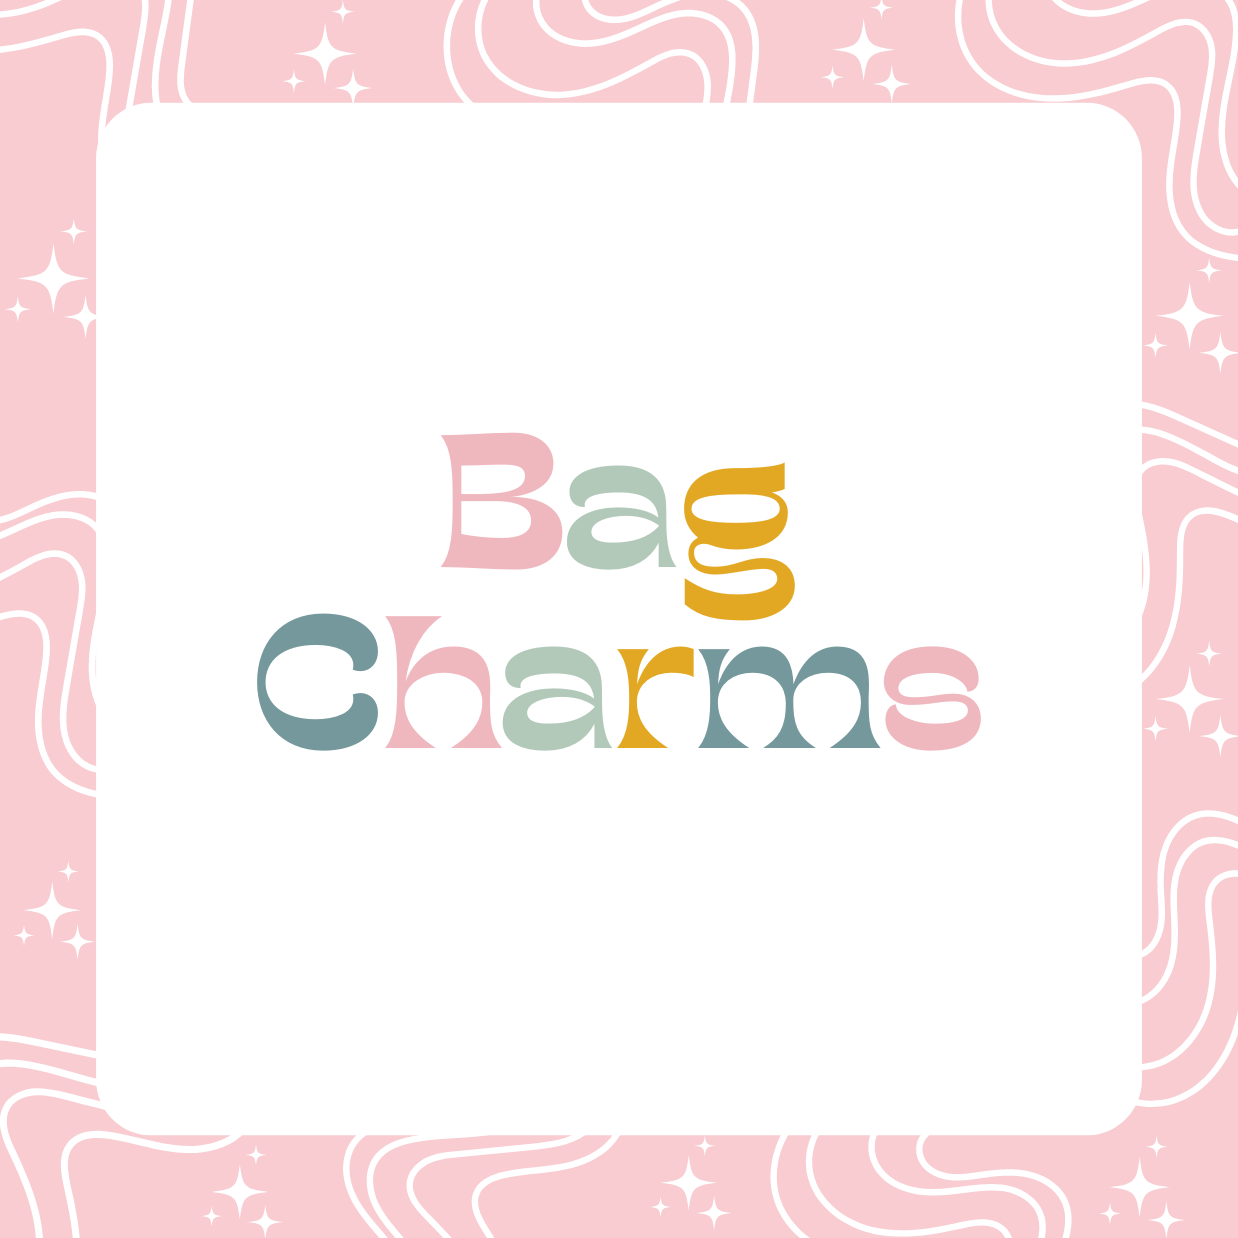 Bag Charms